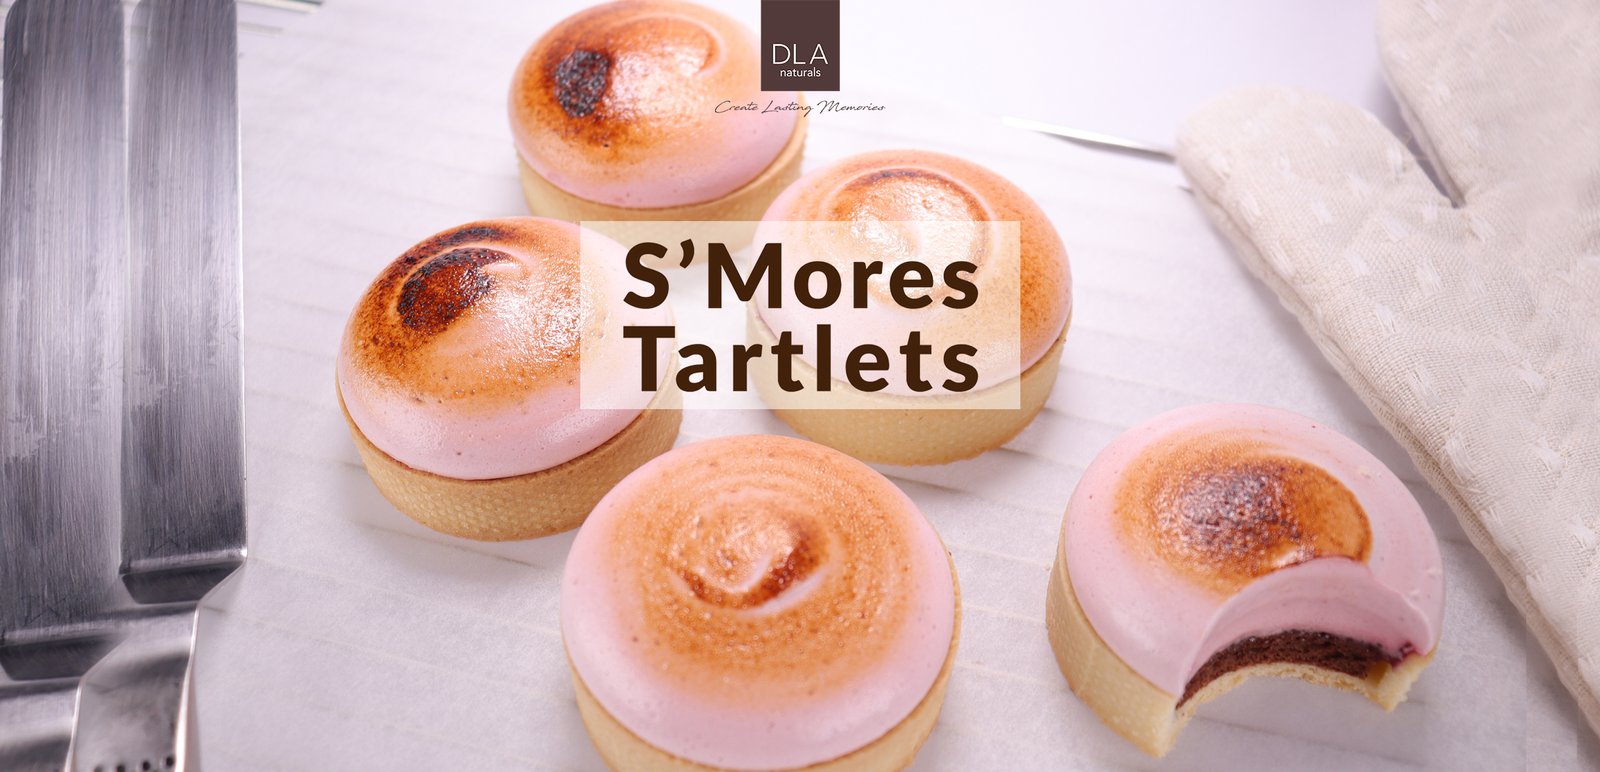 S'mores Tartlets